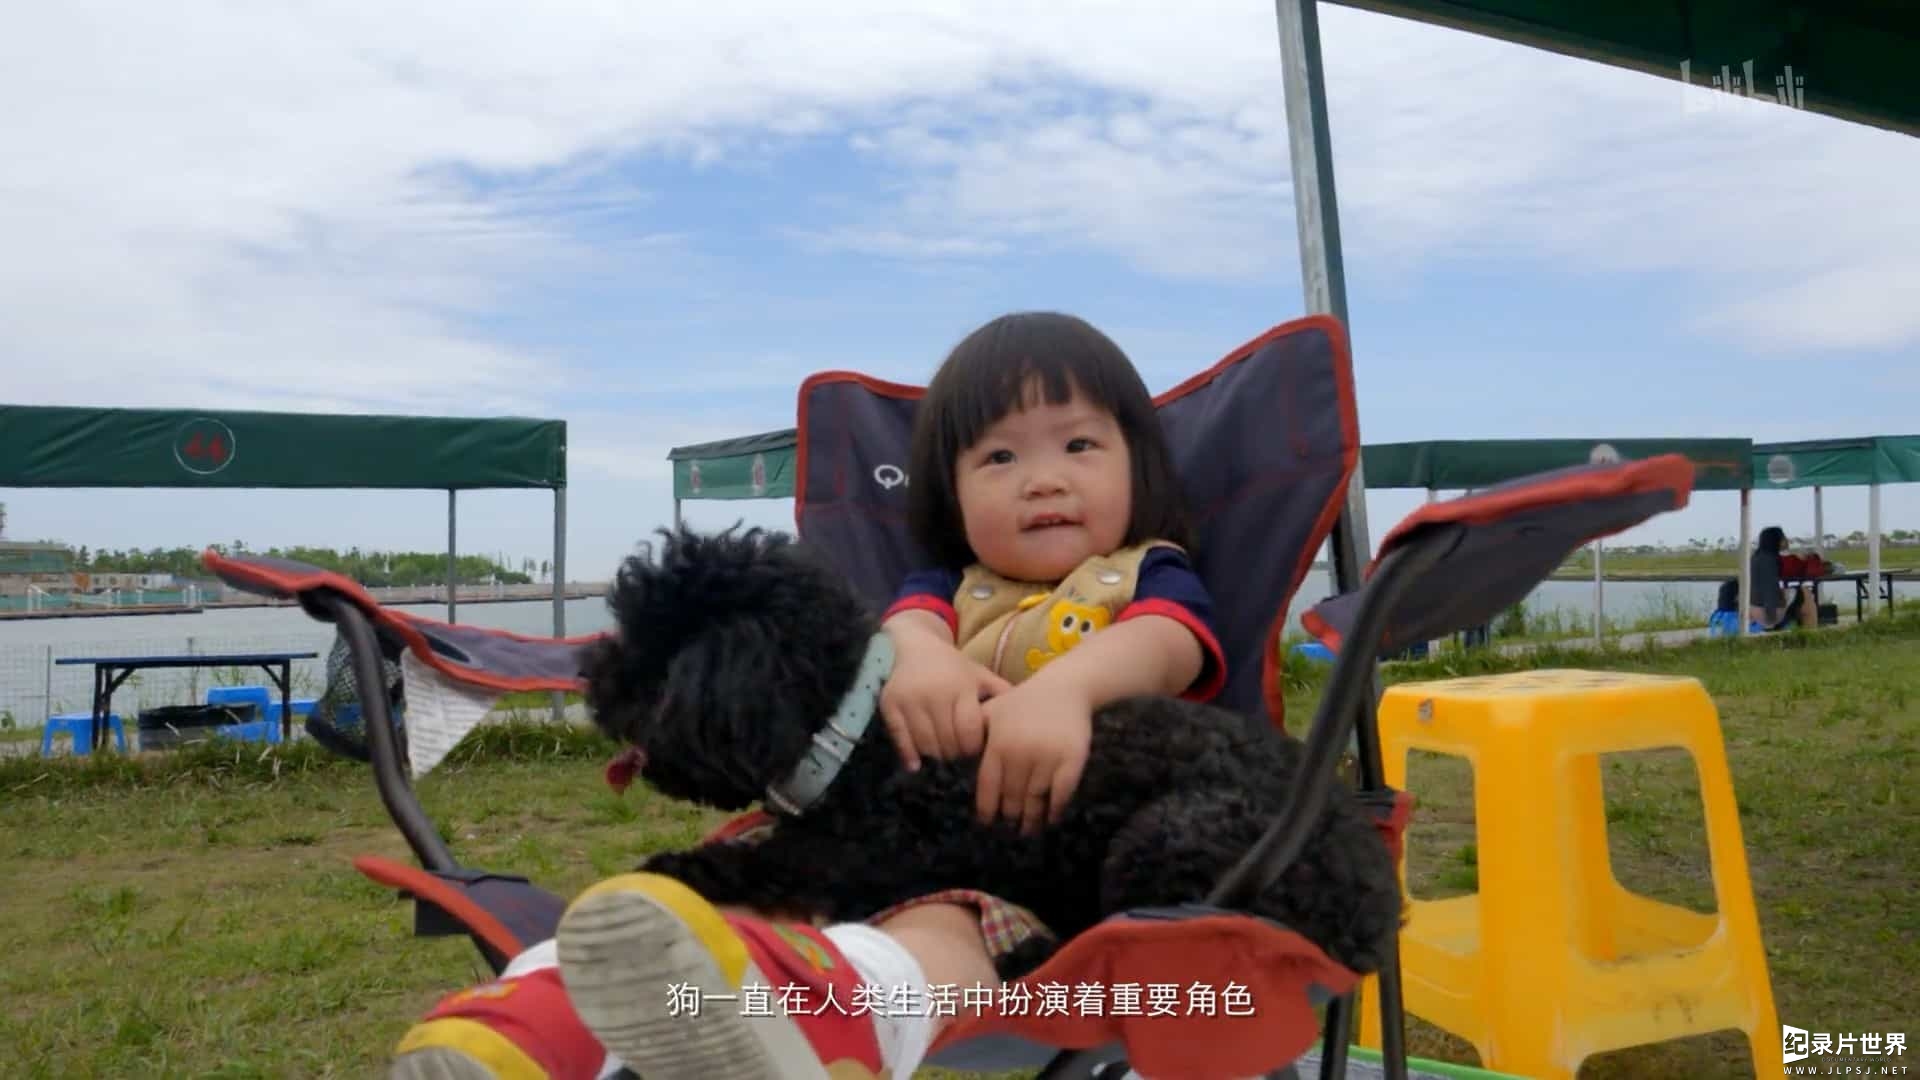 宠物纪录片/萌宠系列《狗狗在中国 Dogs in China》全5集 国语中字